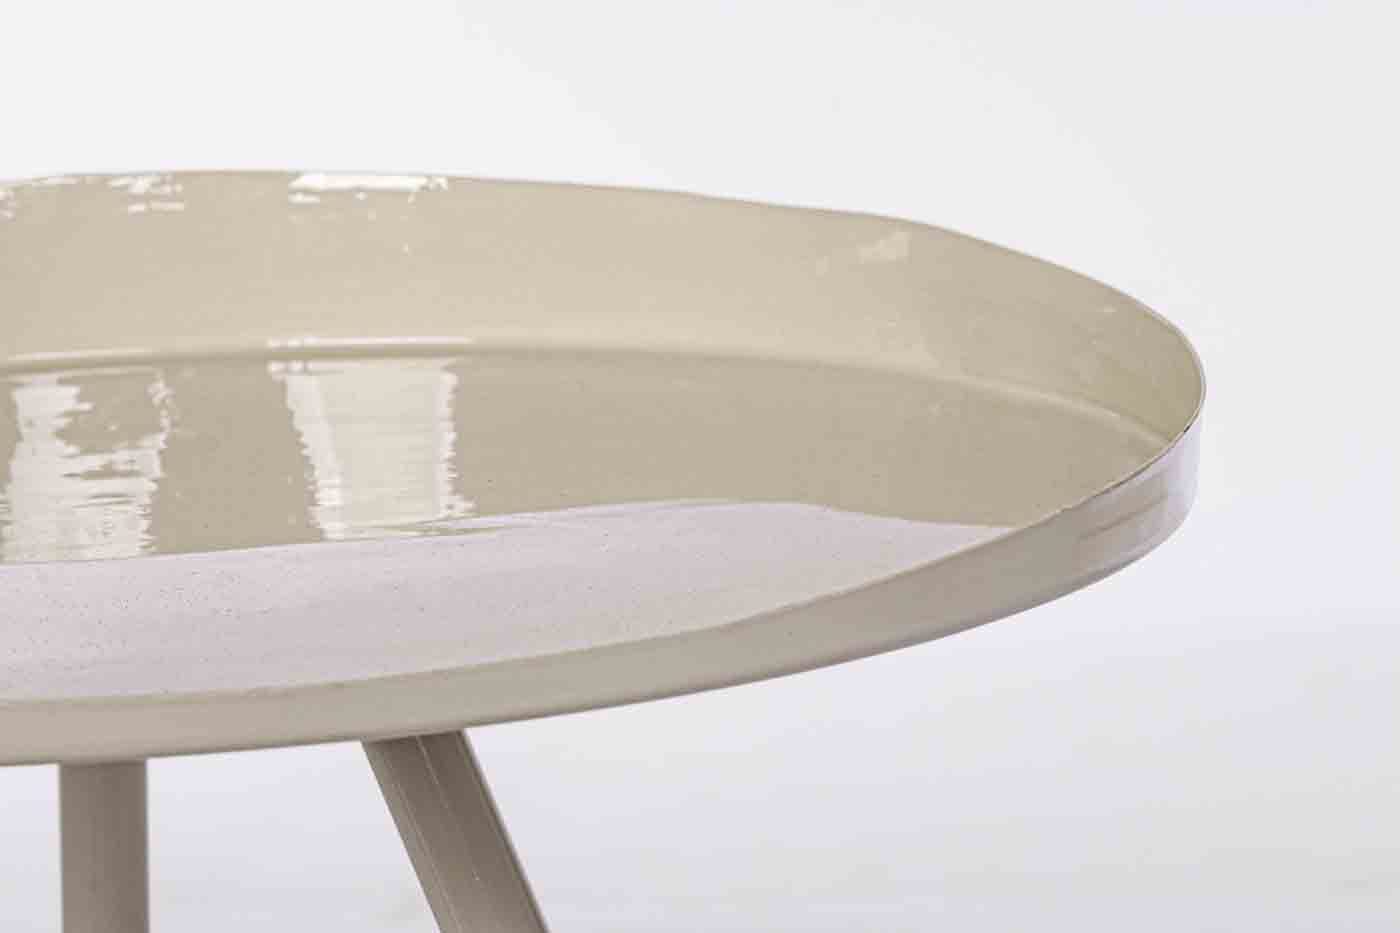 Beistelltisch Anchita gefertigt aus Metall in einem cremigen Farbton. Modernes Design. Marke Bizotto.